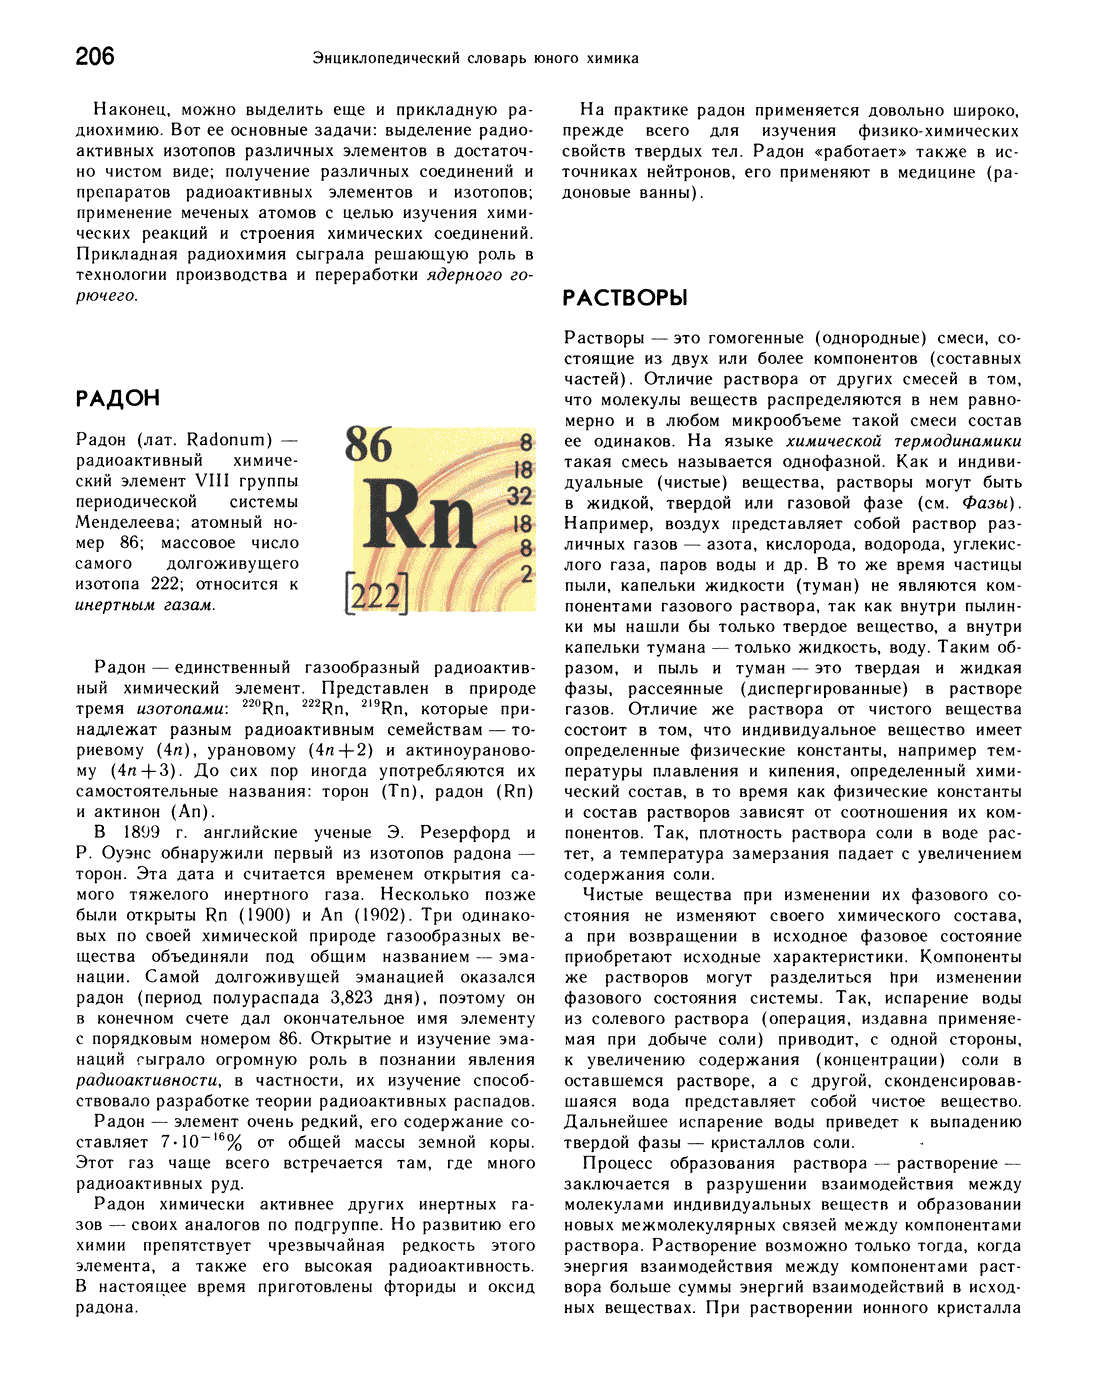 Радон — википедия